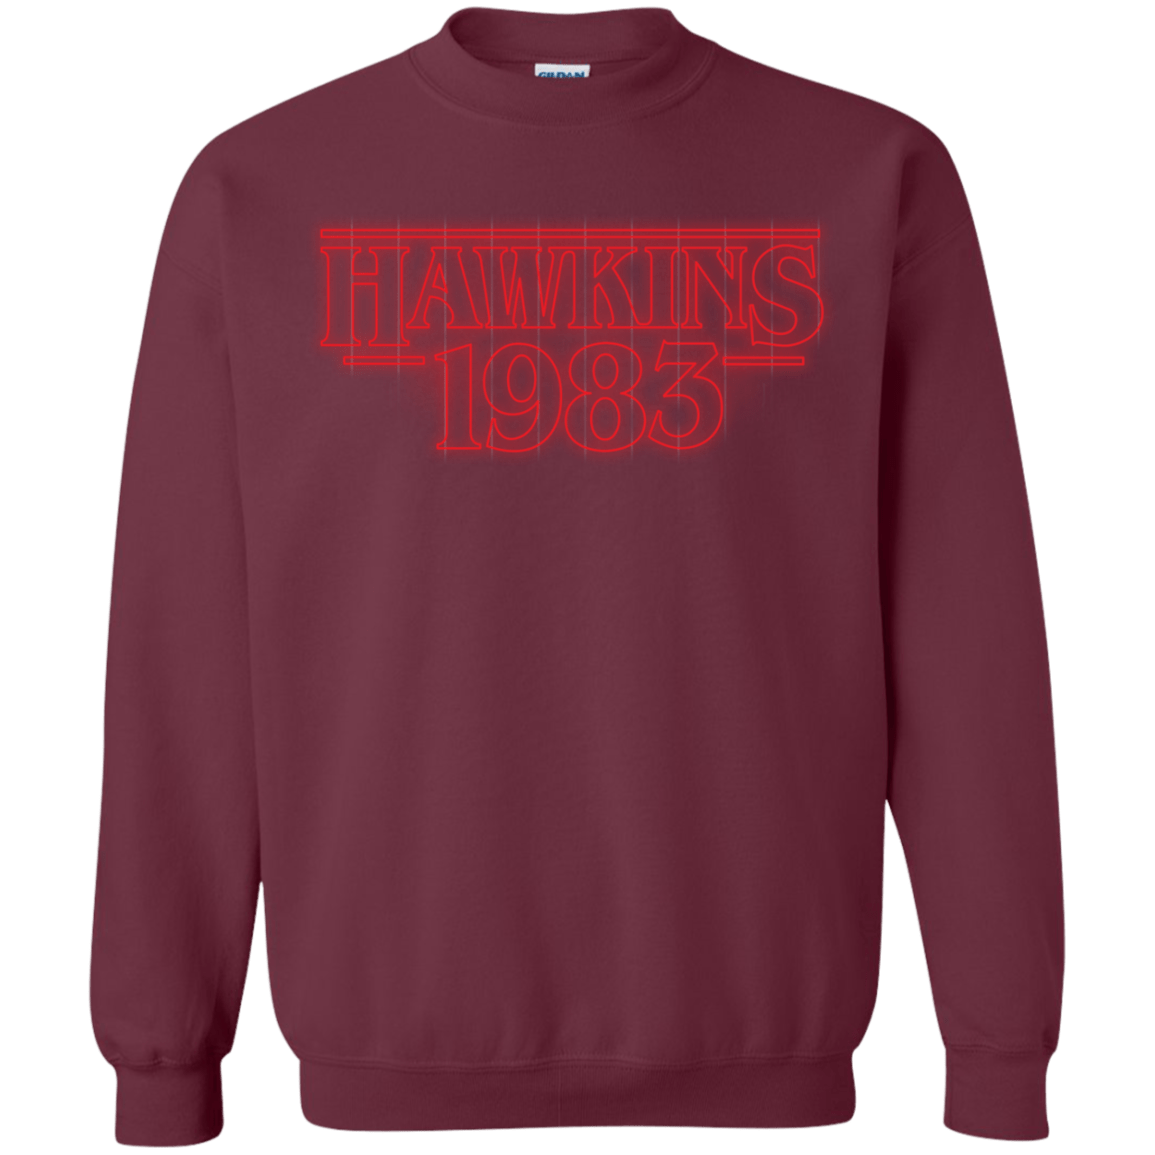 Sweatshirts Maroon / Small Hawkins 83 Crewneck Sweatshirt